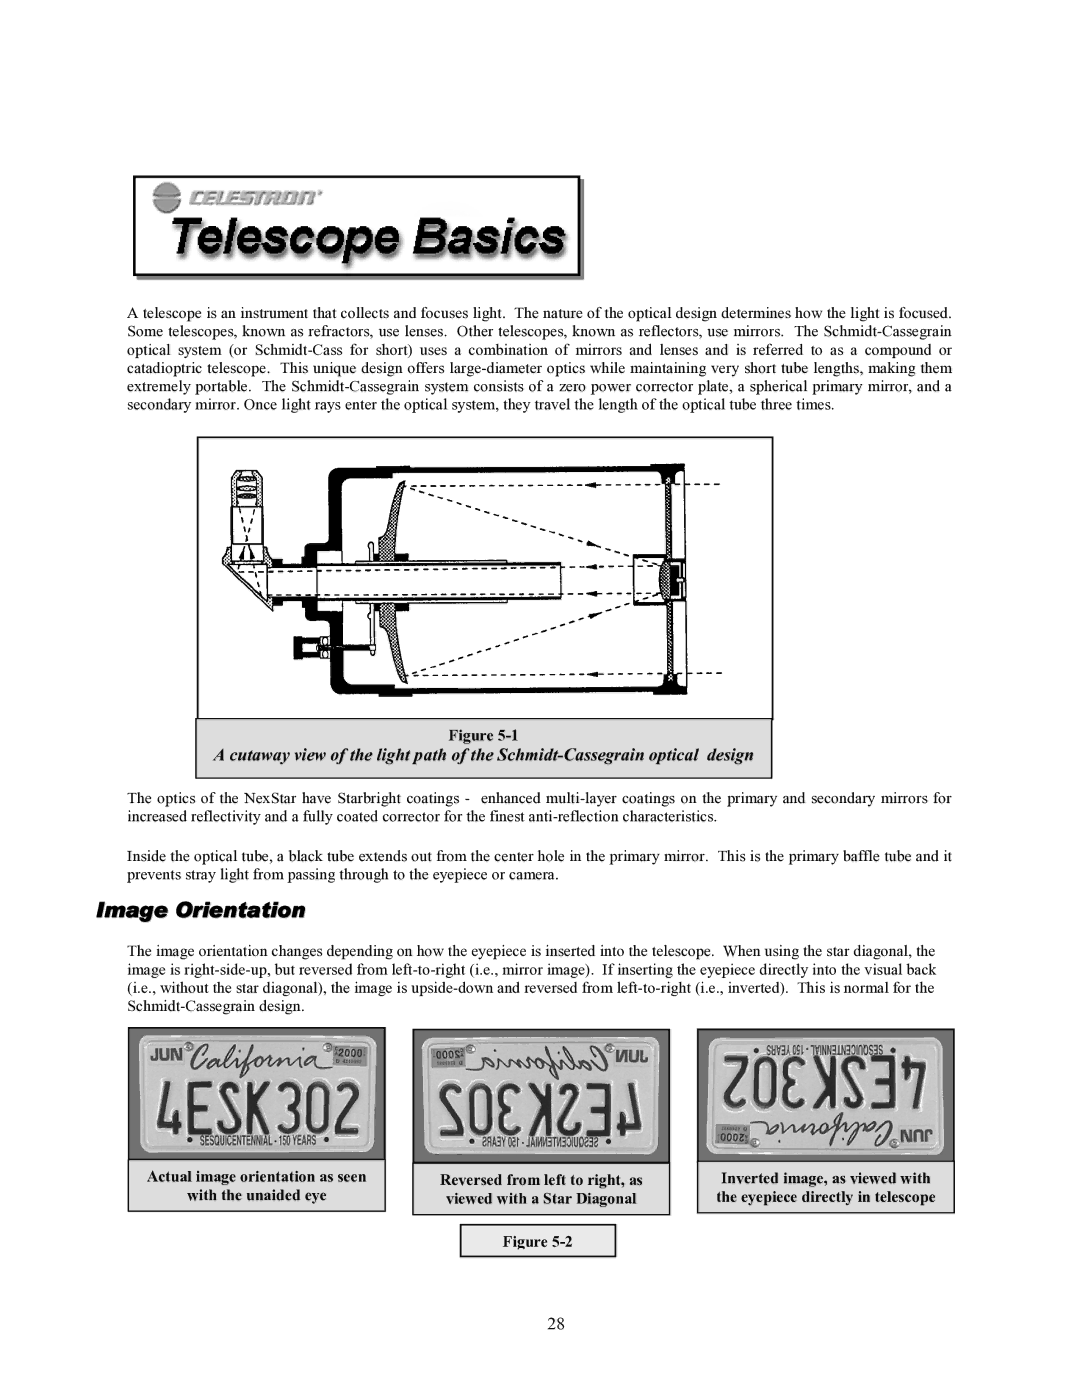 Celestron 93507 manual Image Orientation 